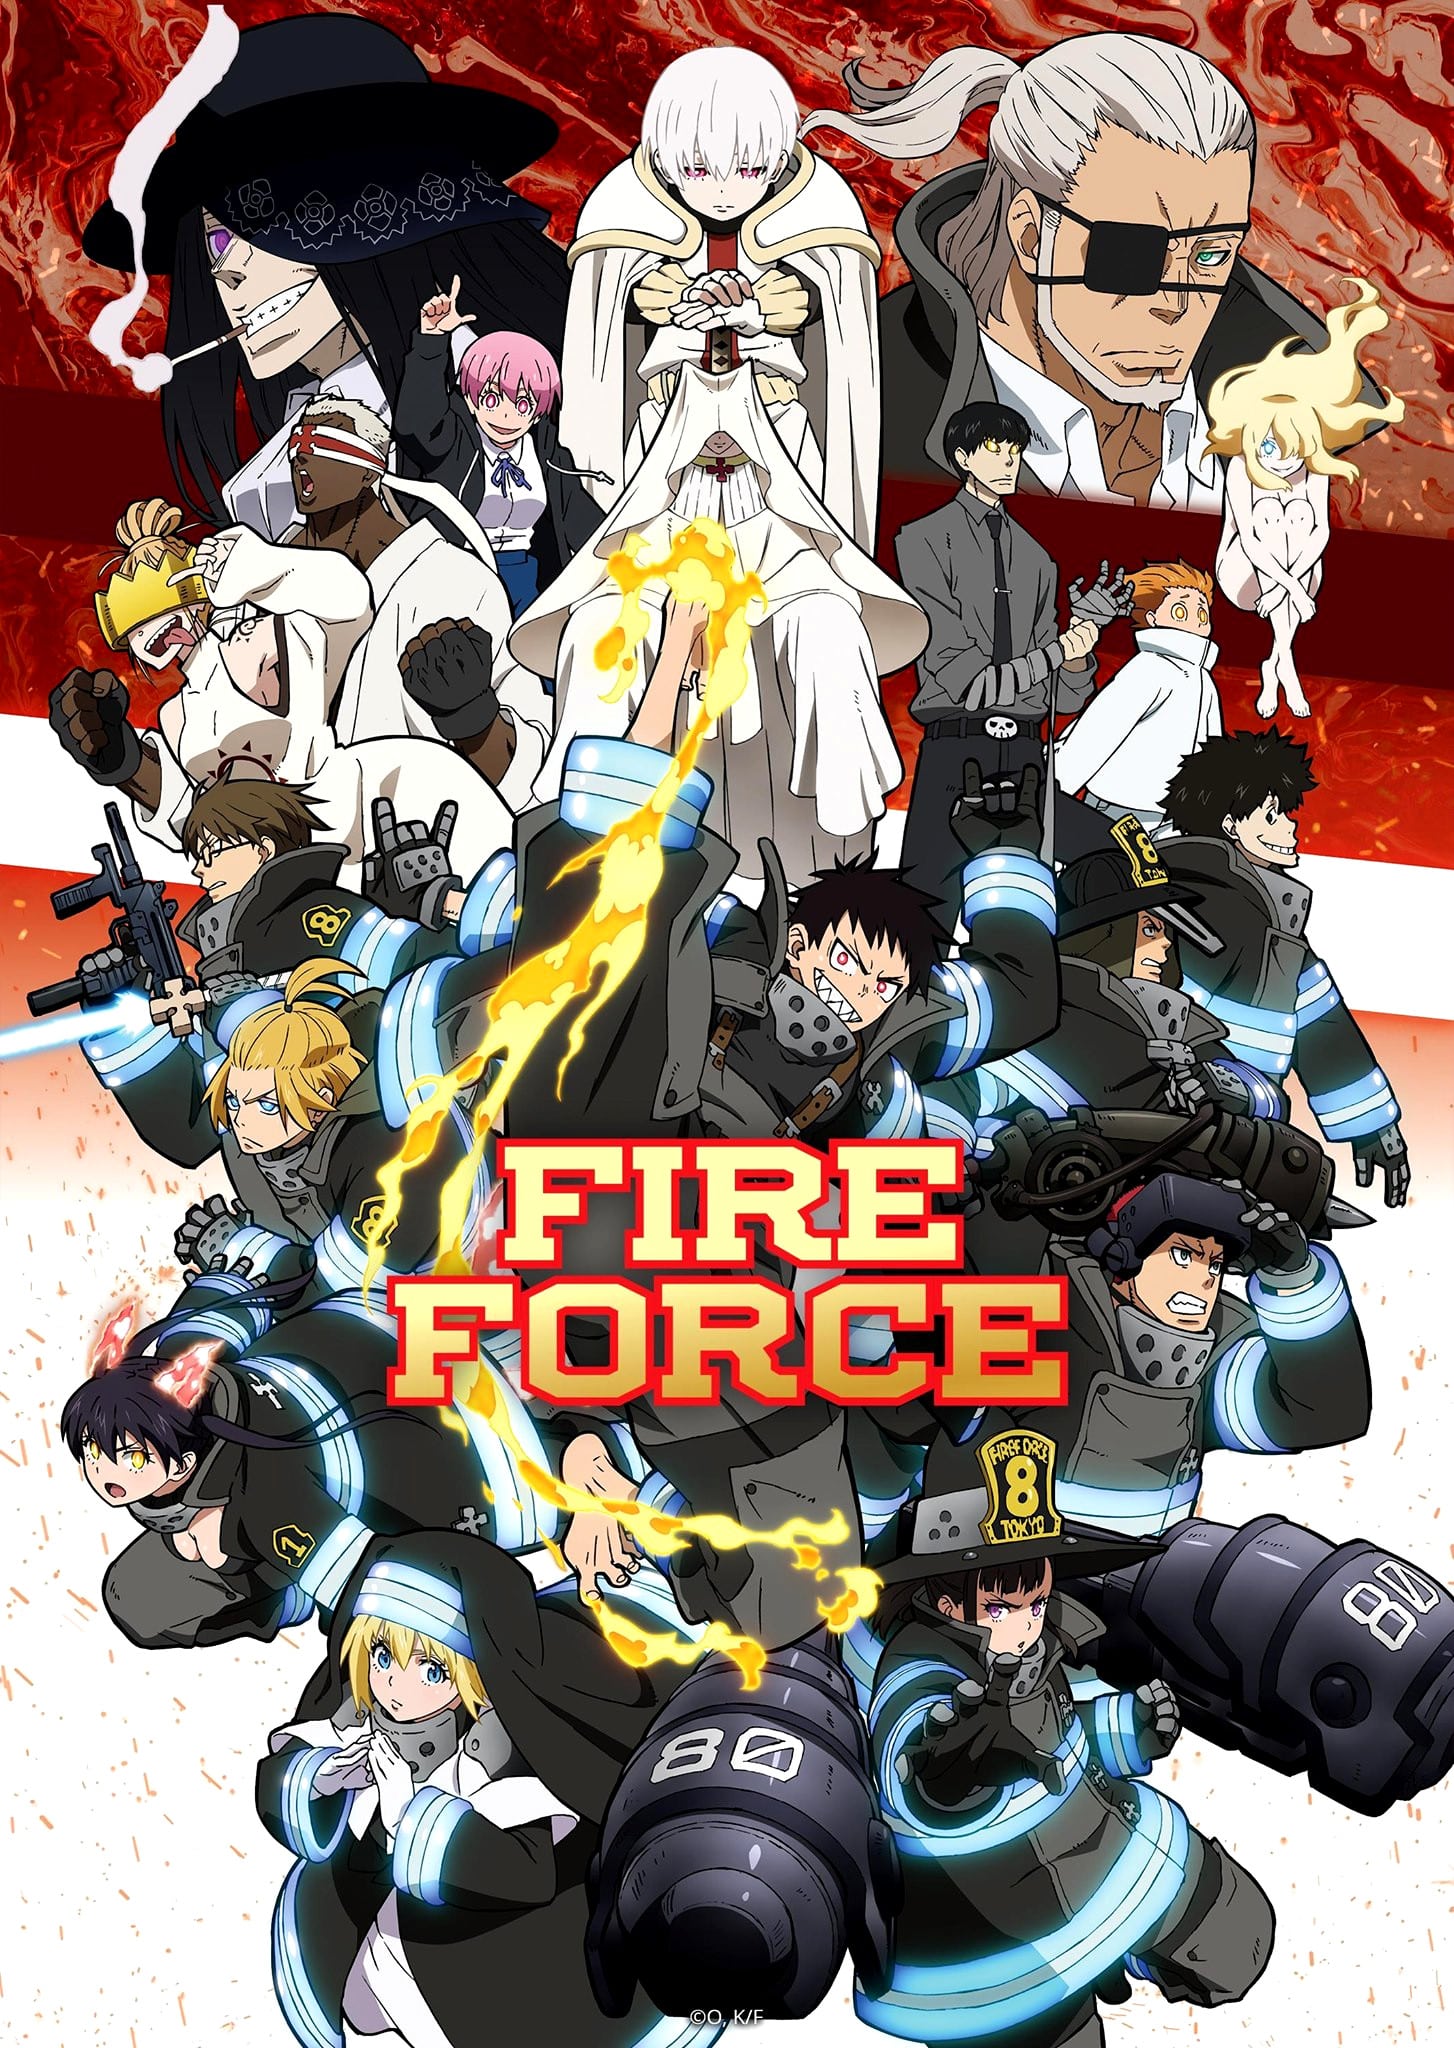 Visuel clé et trailer pour l'anime Fire Force saison 2